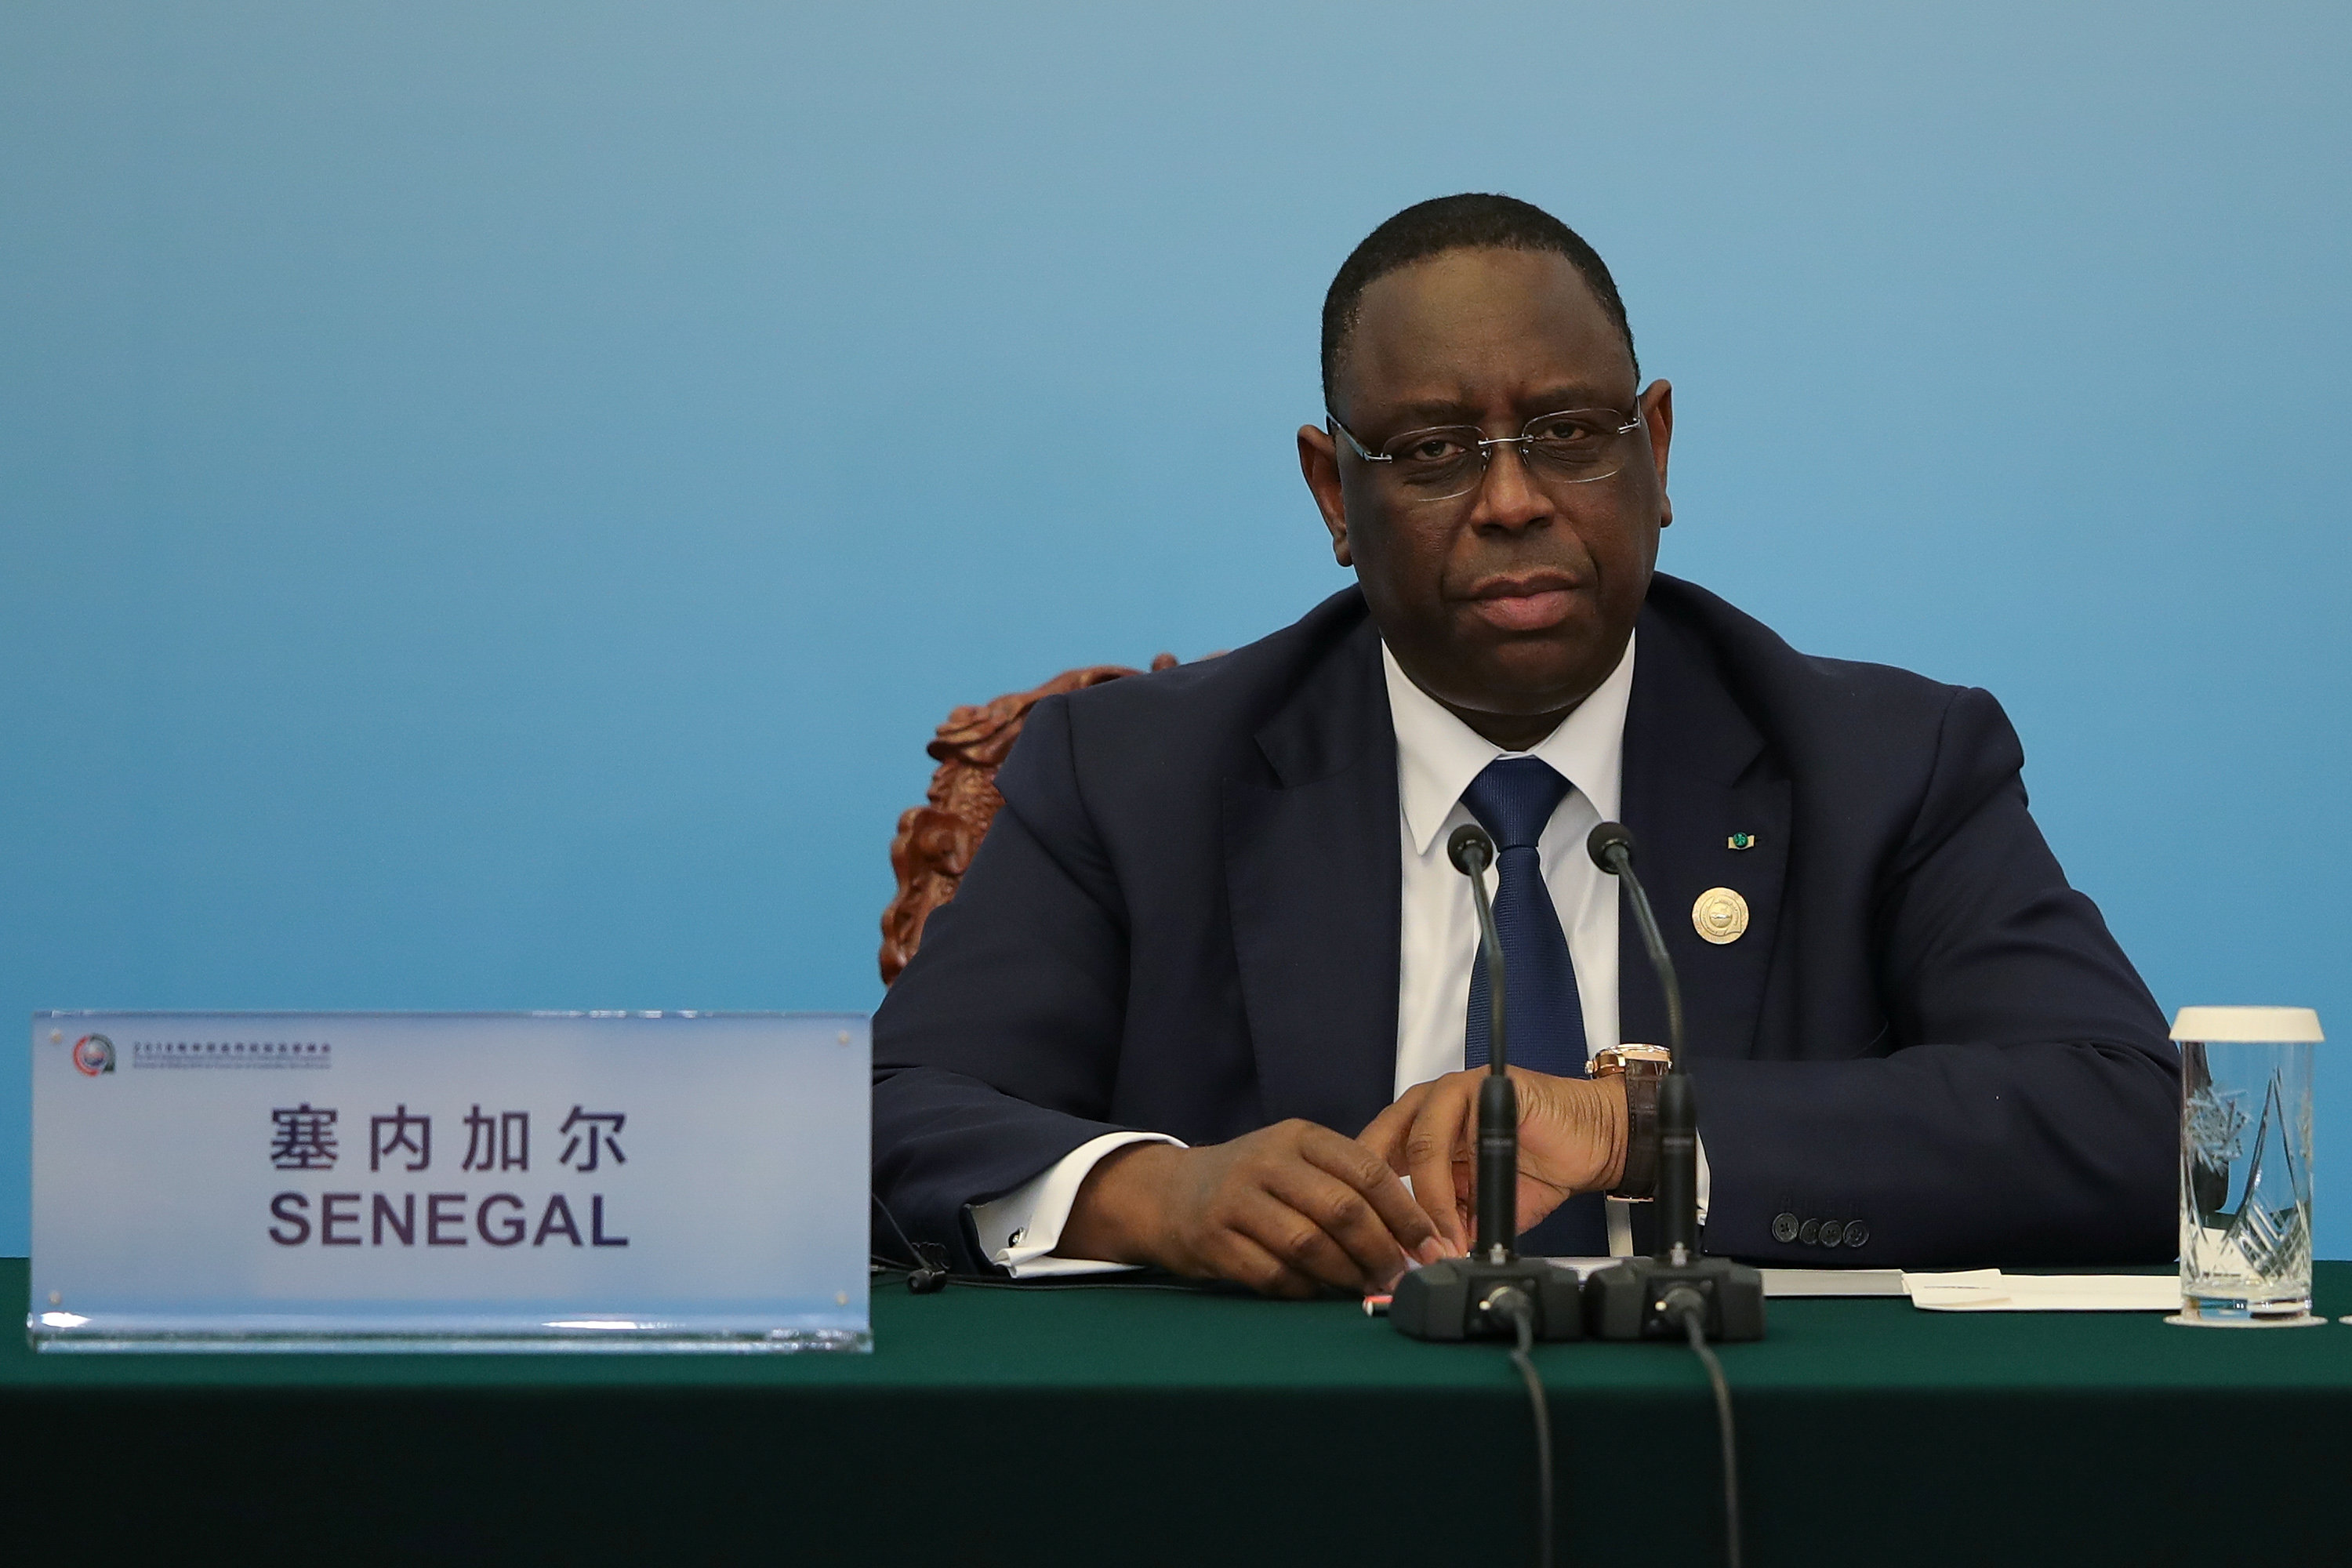 رئيس السنغال ماكي سال يتحدث في مؤتمر قمة بكين 2018